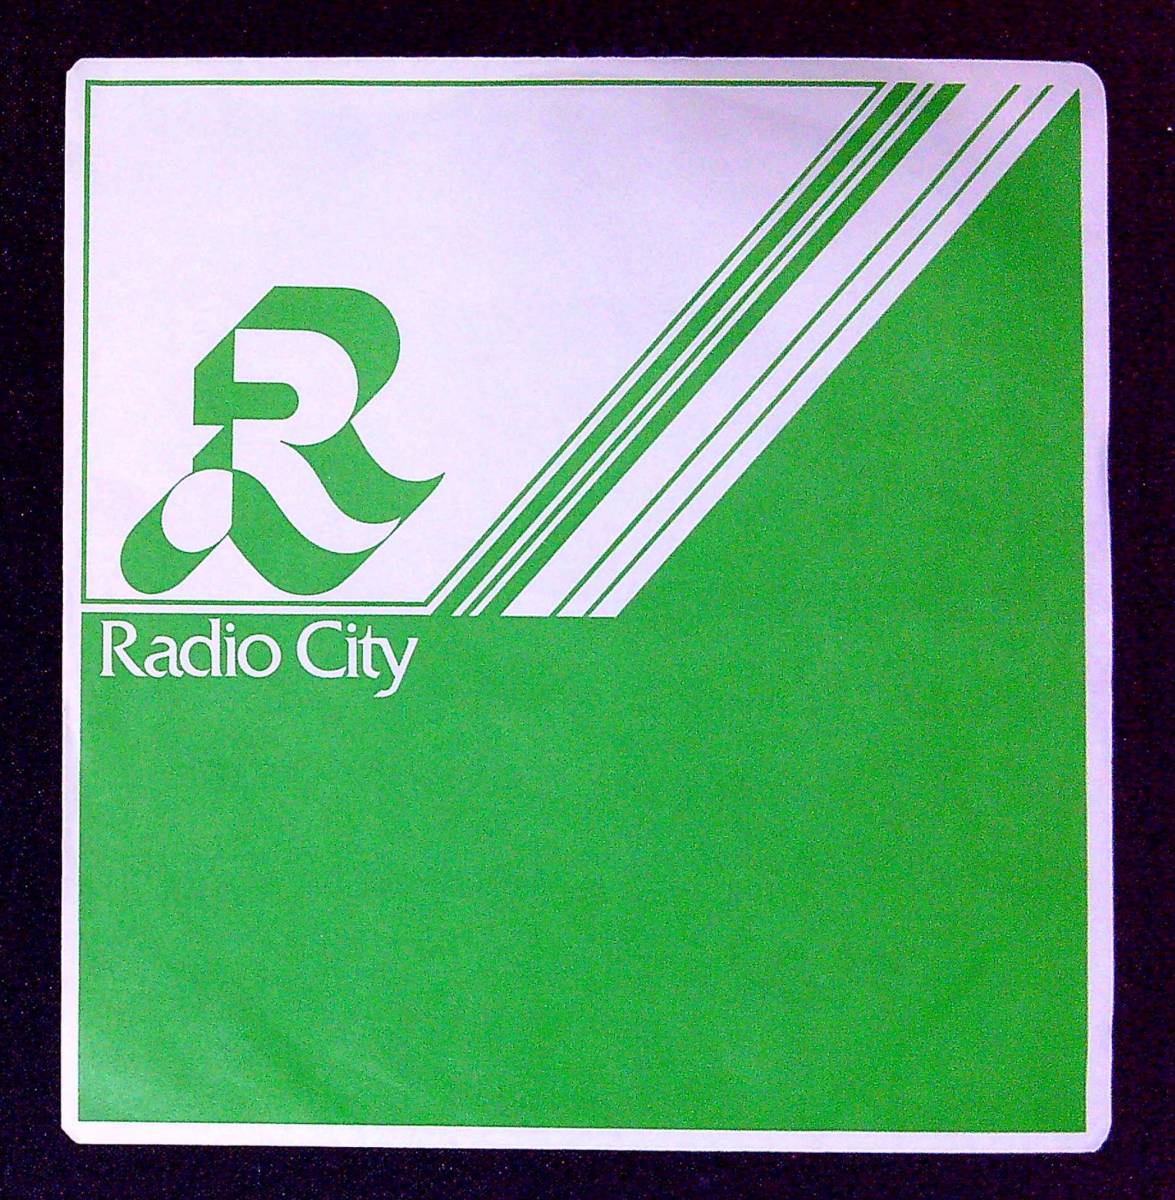 ◆290◆EP盤用・中古レコード袋◆ラジオシティ◆Radio City◆1枚◆外ビニール袋新品1枚付◆_画像1